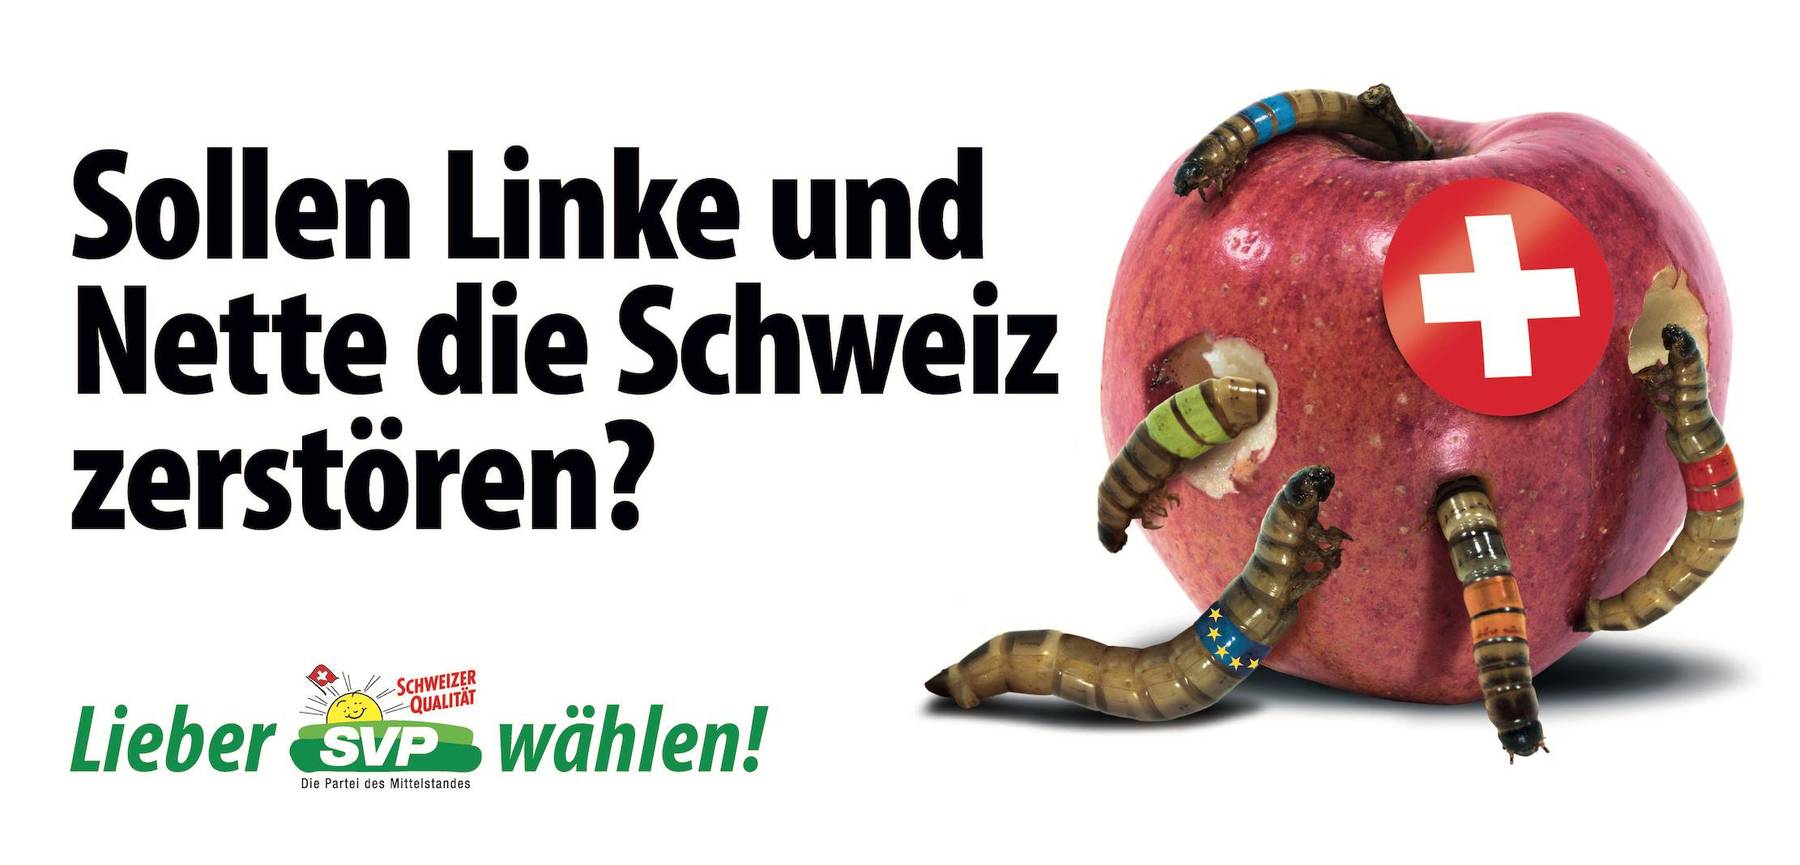 Die Schweiz als Apfel, der ausgehölt wird von Würmern in den Farben der Parteien sowie der EU.